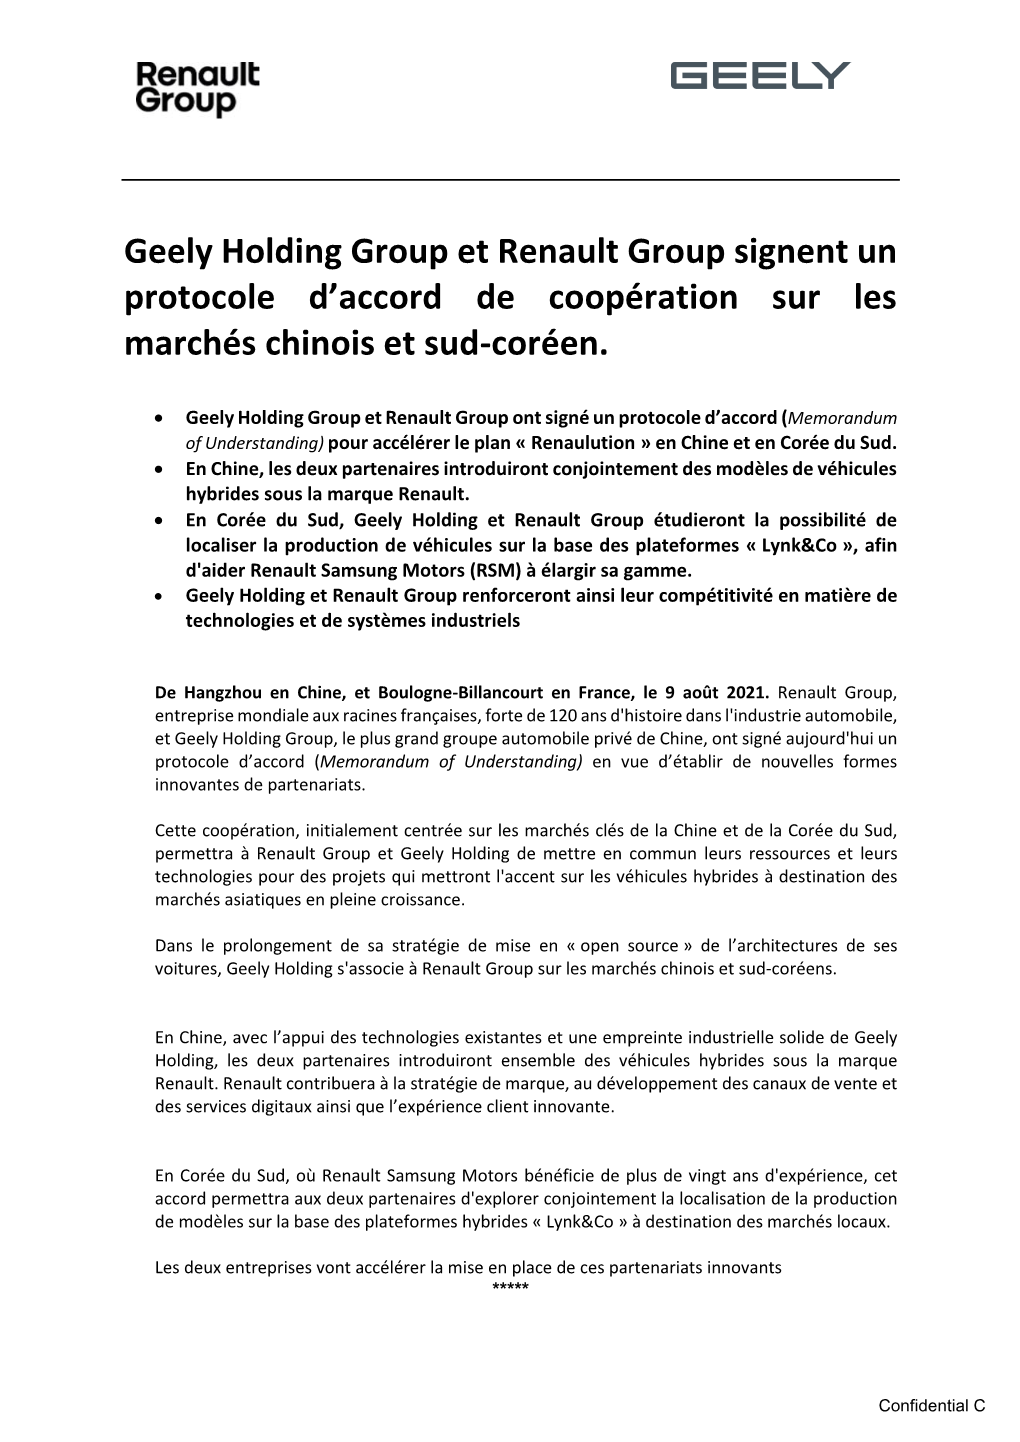 Geely Holding Group Et Renault Group Signent Un Protocole D'accord De Coopération Sur Les Marchés Chinois Et Sud-Coréen